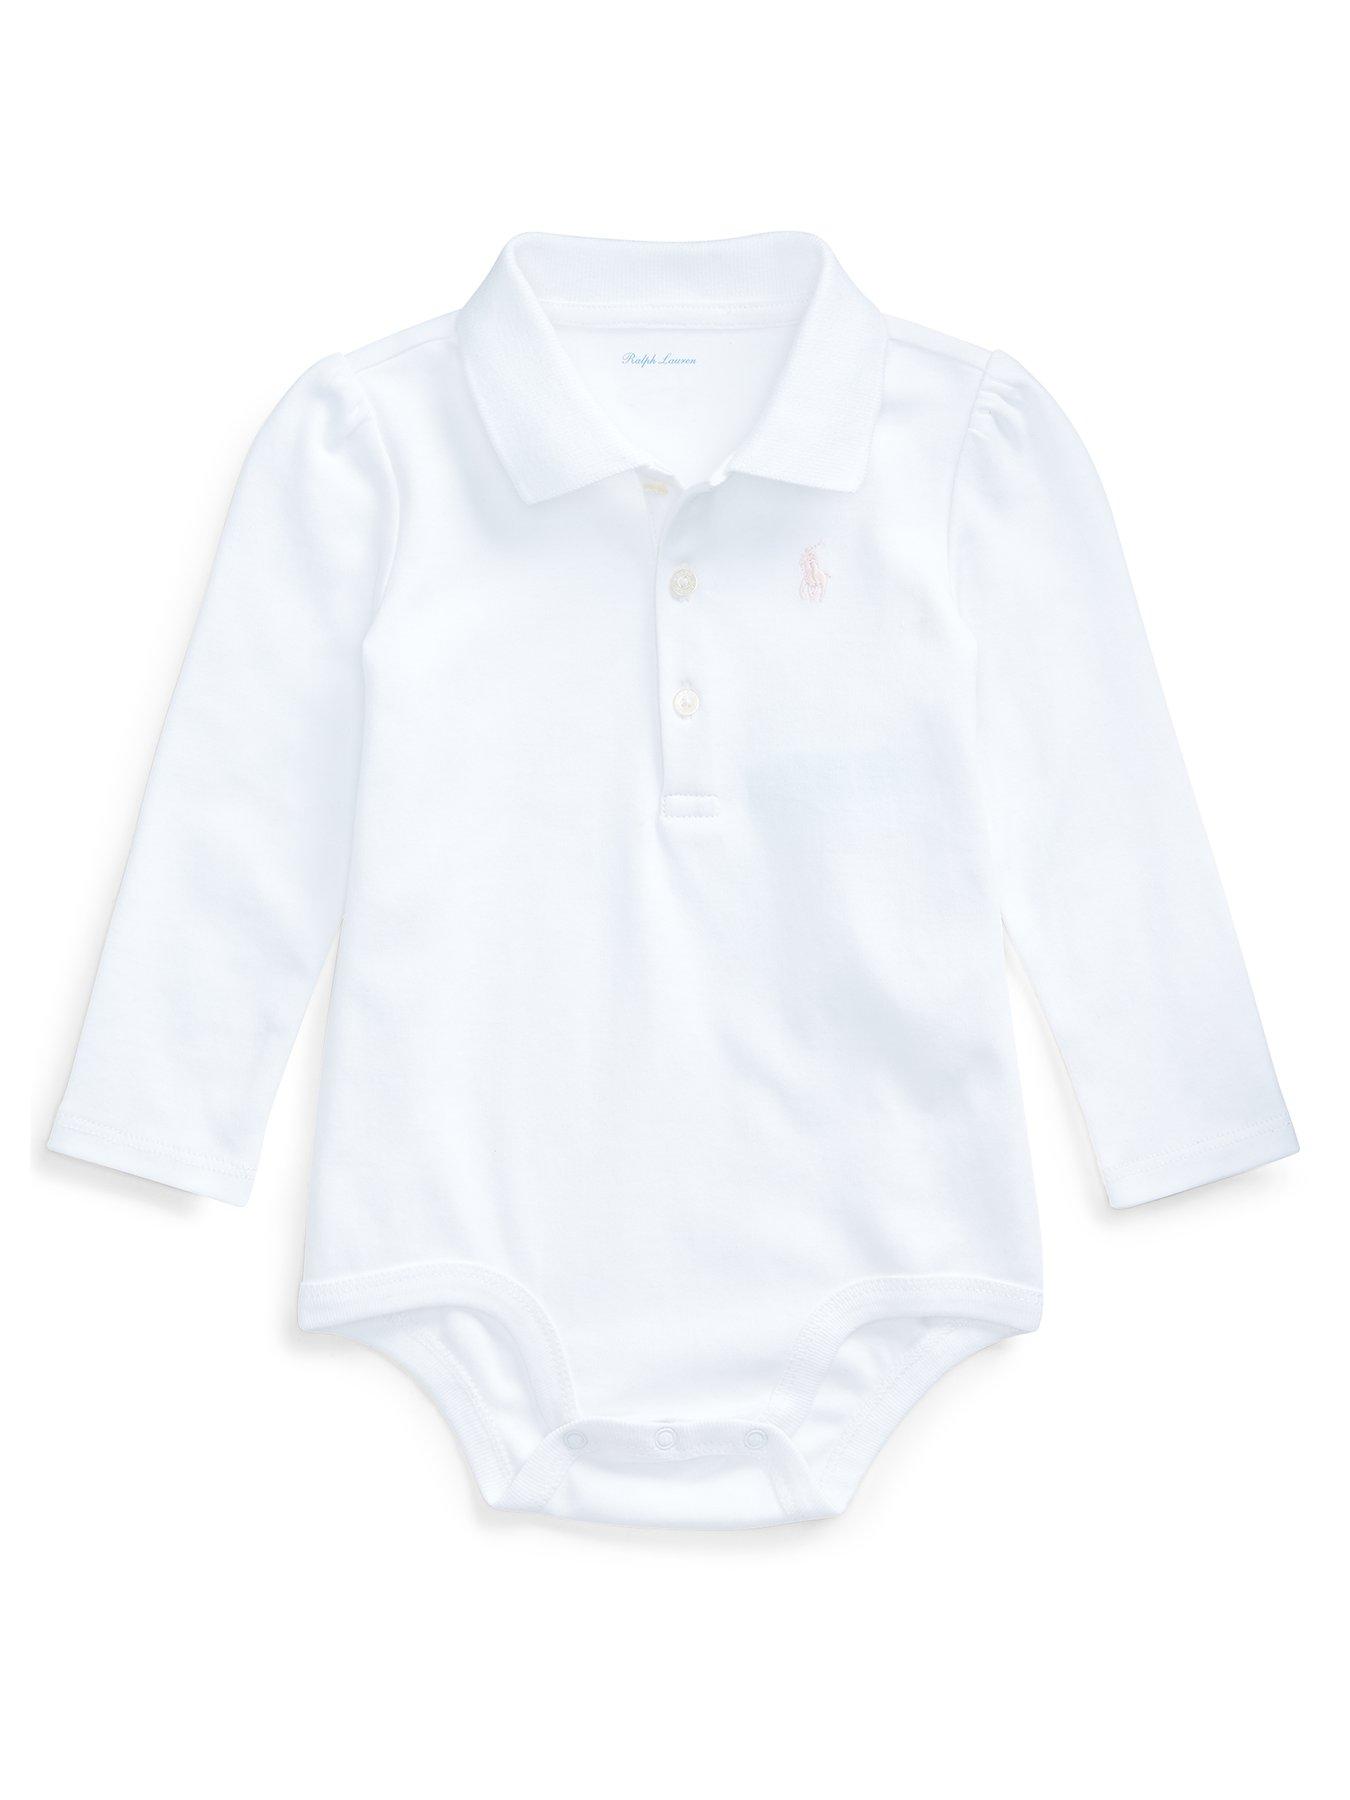 newborn polo ralph lauren clothes